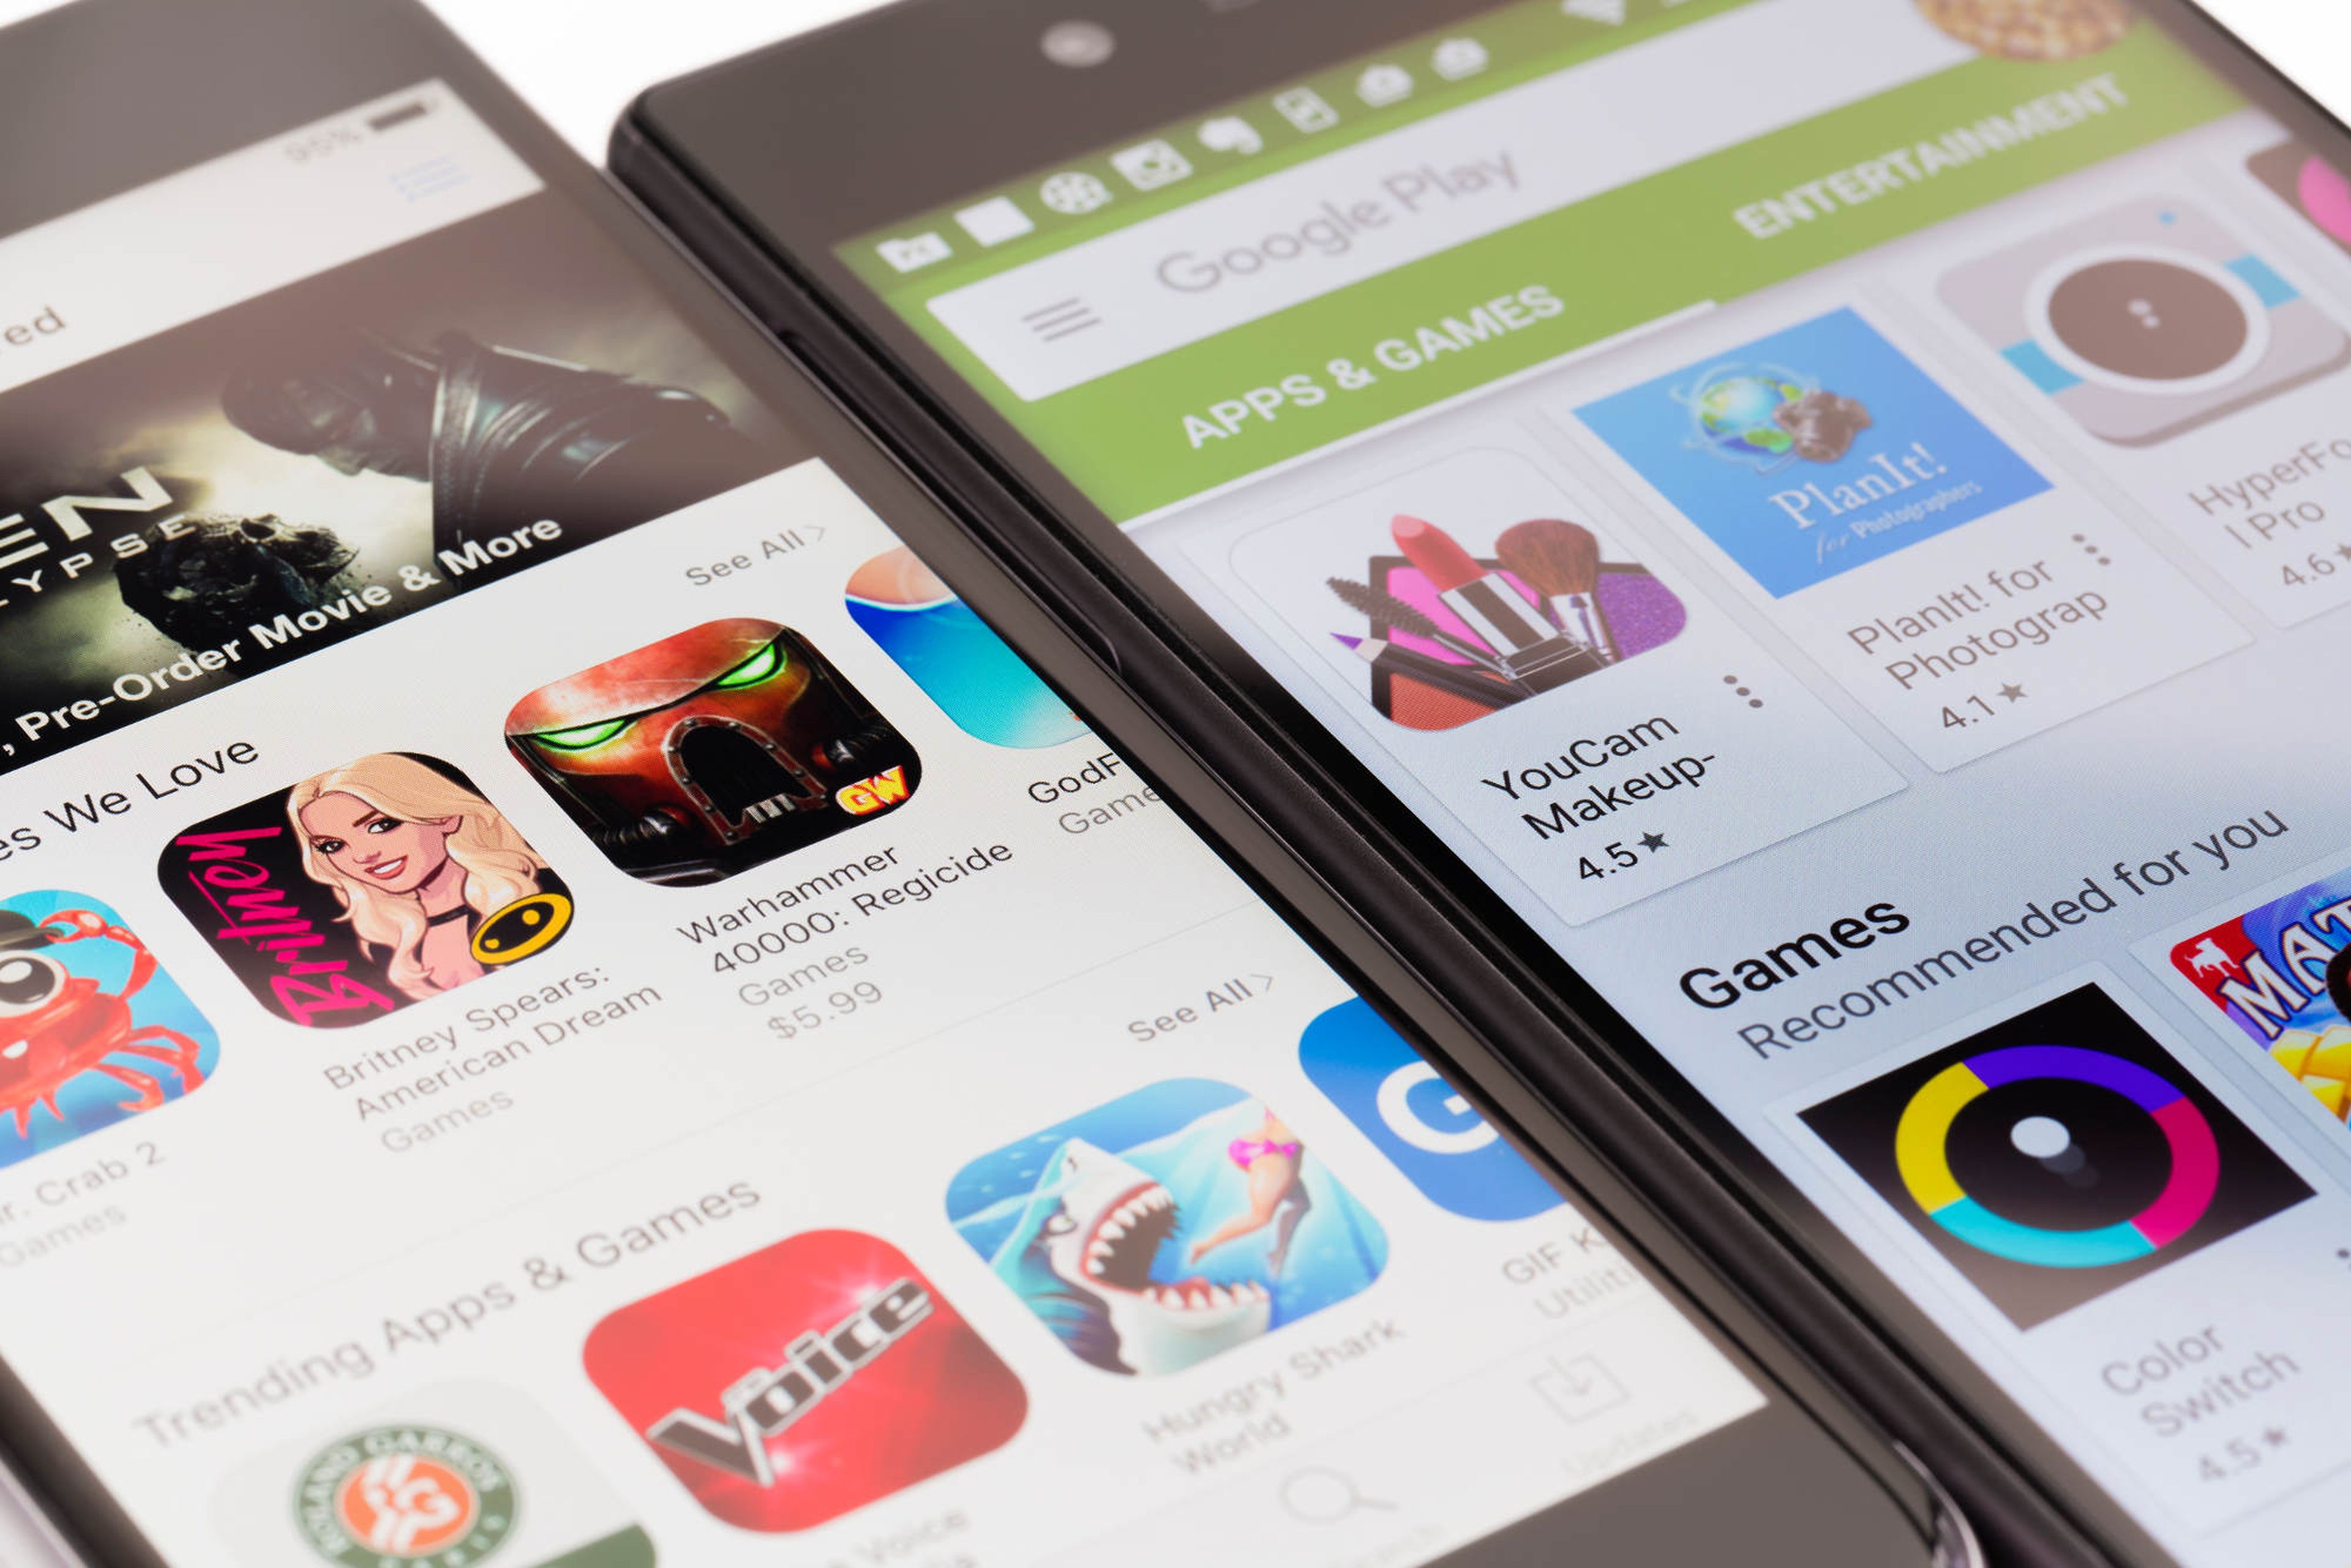 Prueba juegos de pago gratis desde Google Play Store y Play Juegos